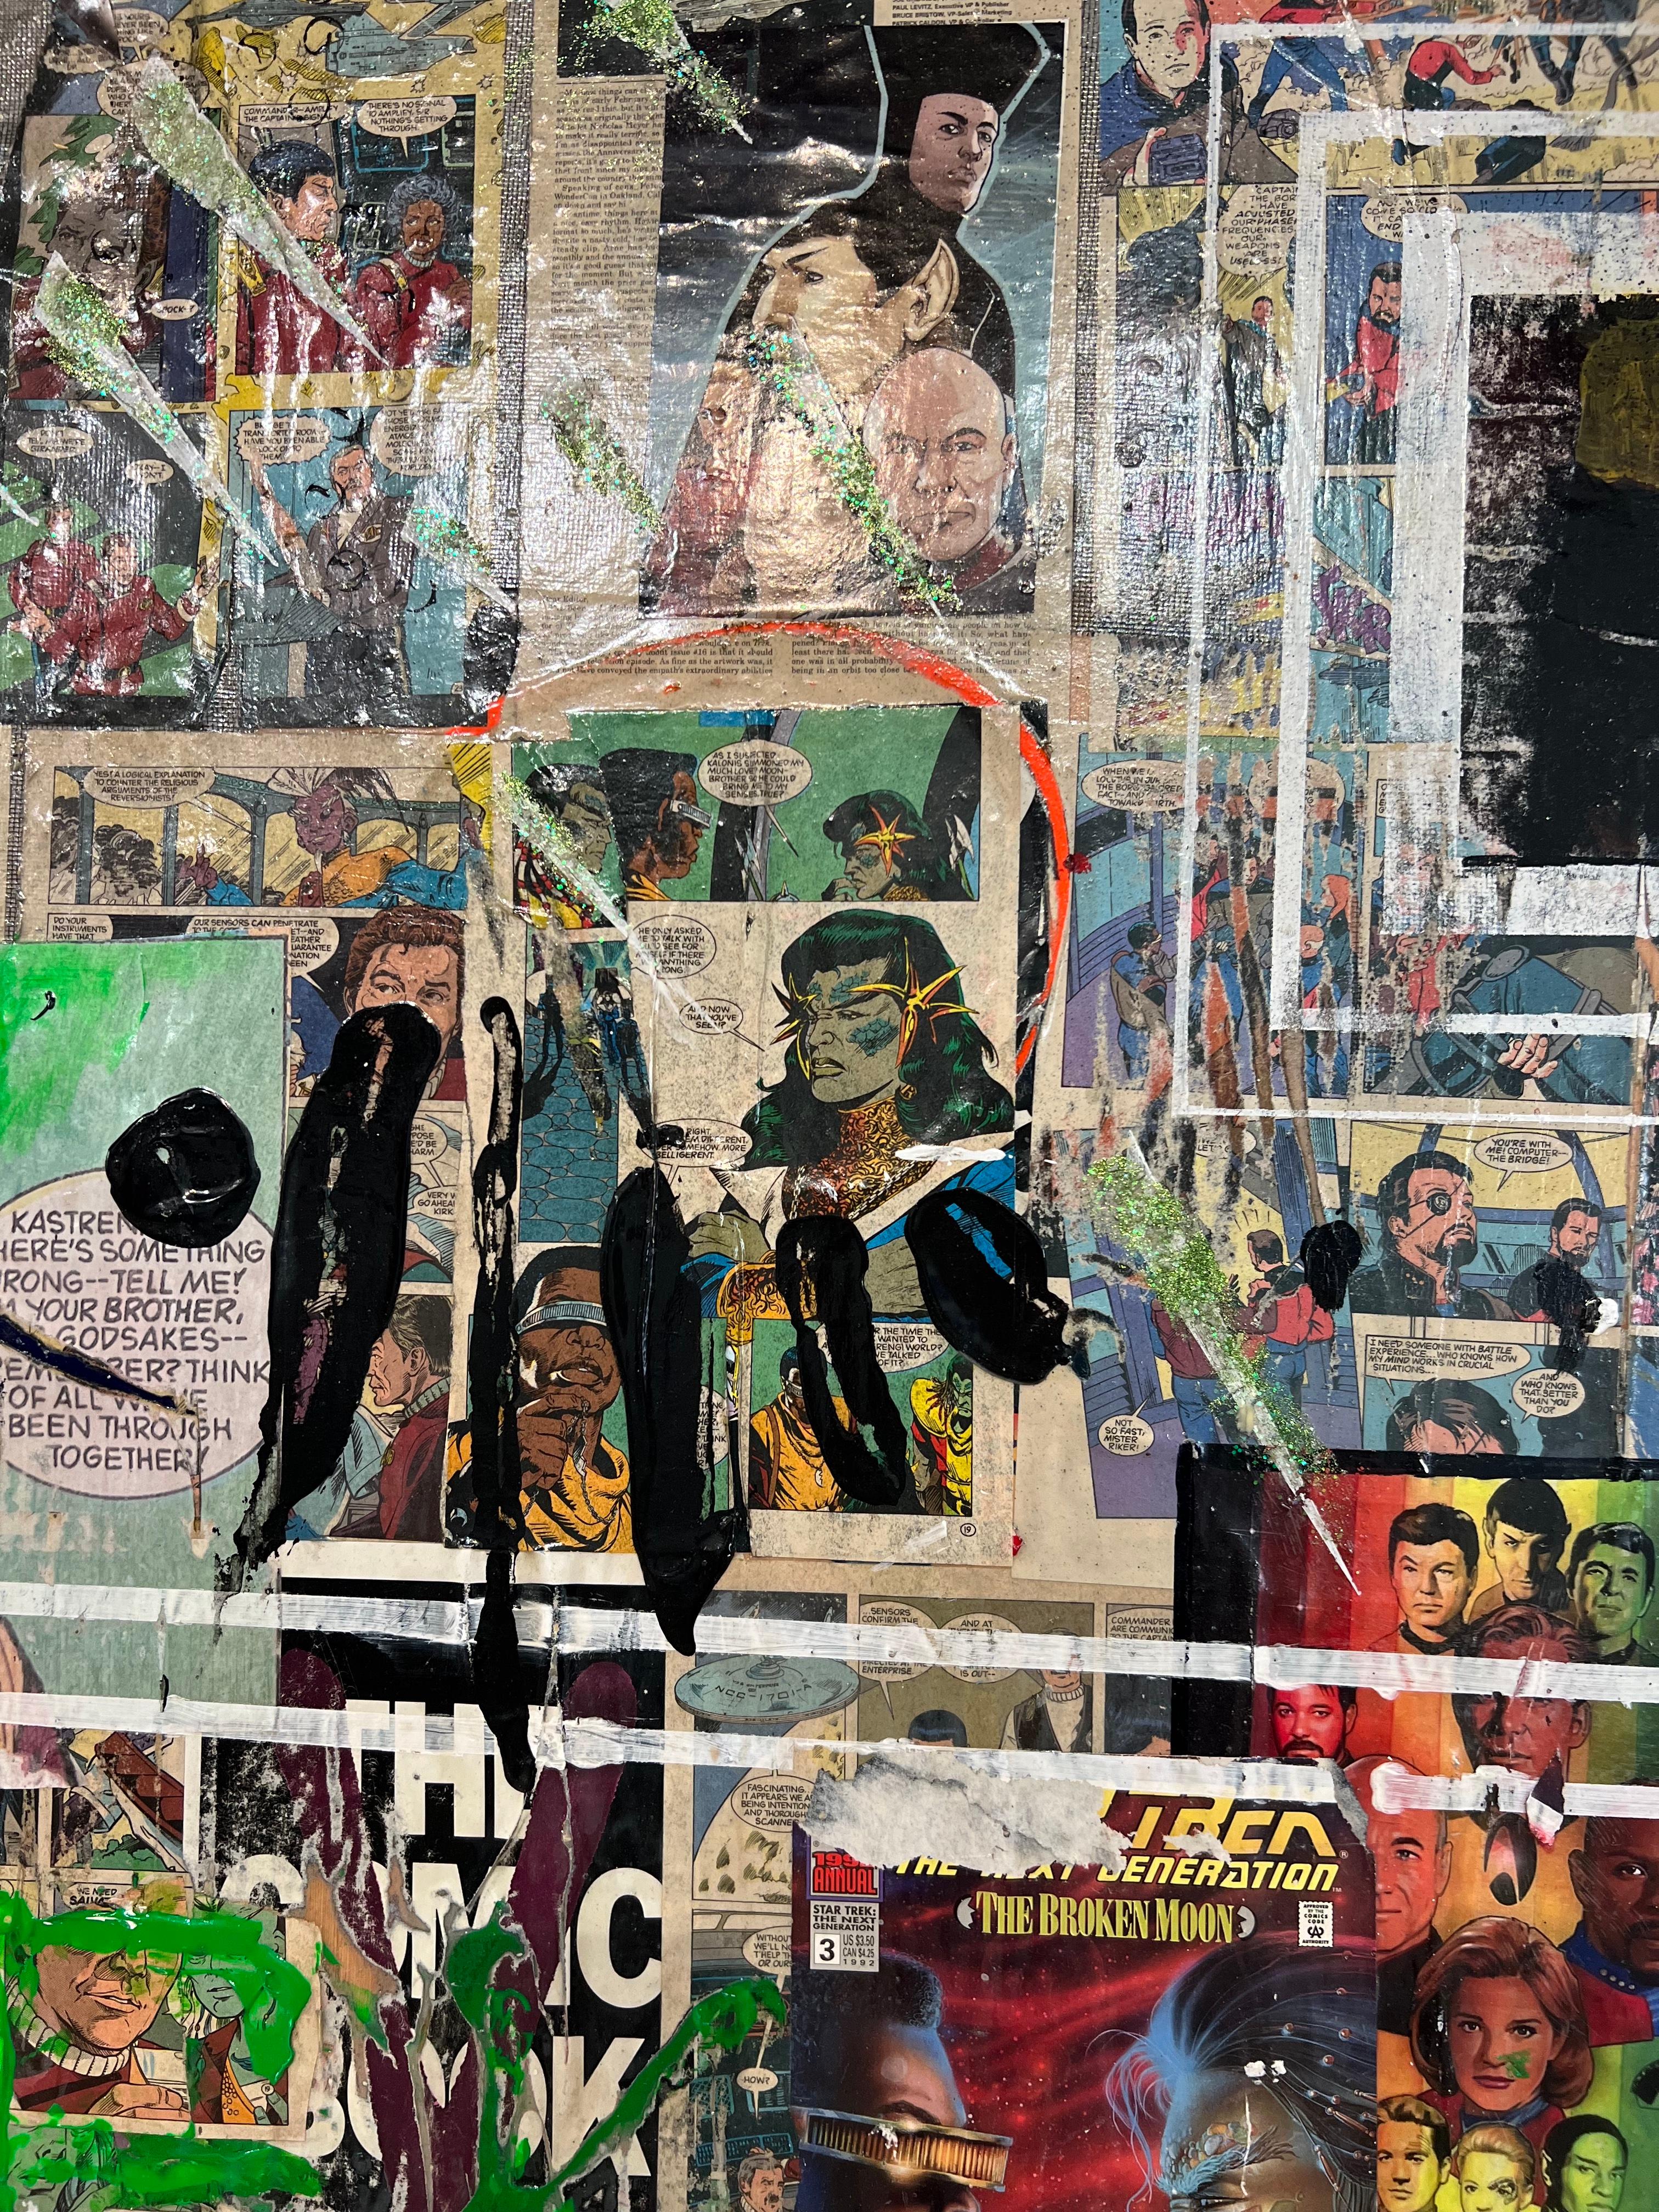 Vintage-Comics und Mischtechnik auf Platte

Paul Ecke ist ein Maler in der Mitte seiner Laufbahn, der zeitgenössische nicht-figurative und figurative Werke auf Leinwand und Tafel malt. Seine Werke sind eine Verschmelzung von Farbe, Textur und